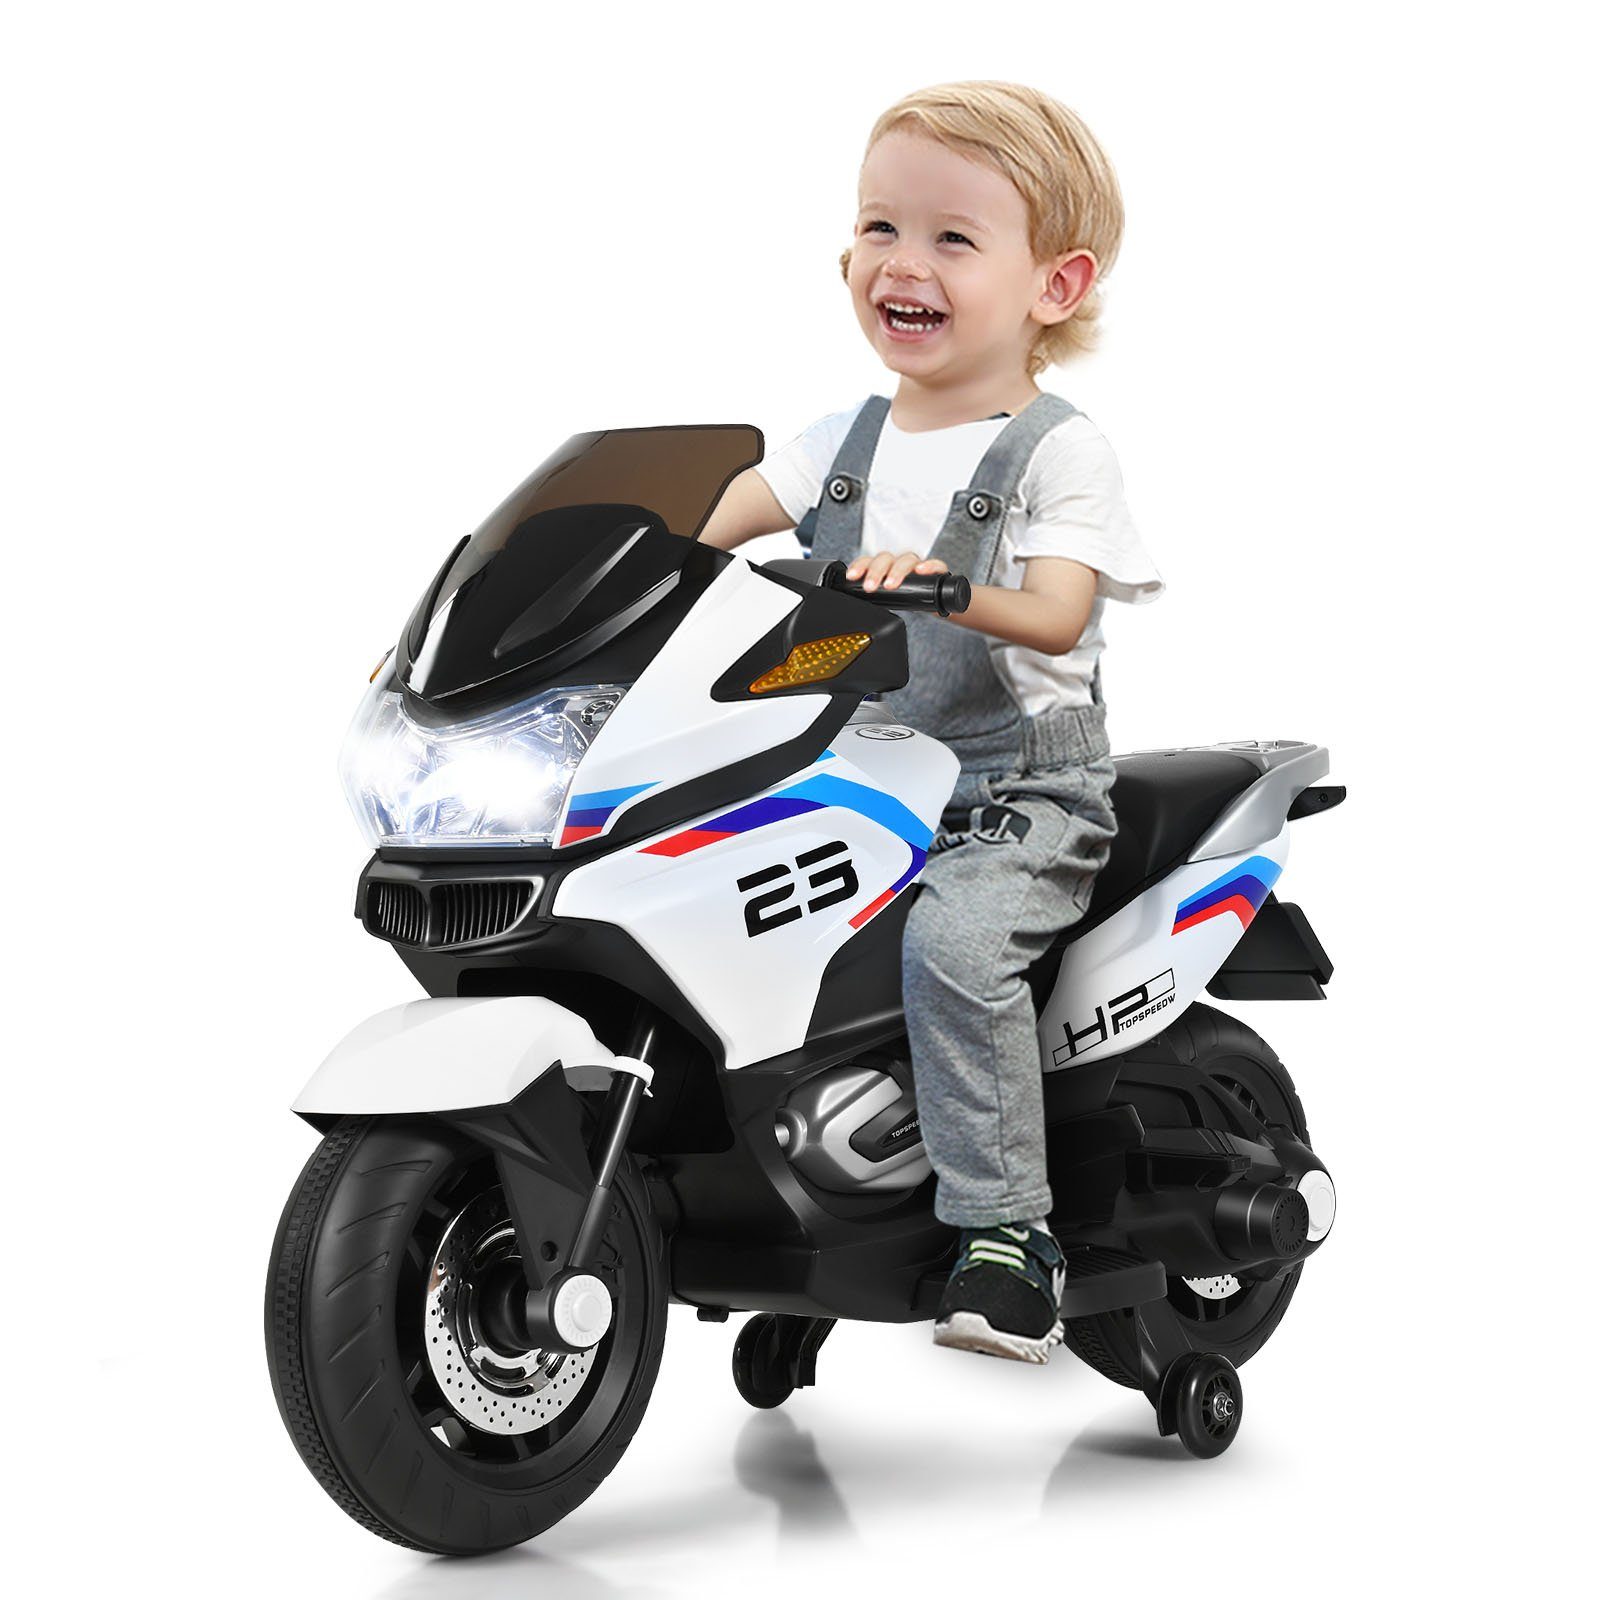 COSTWAY Elektro-Kindermotorrad »Kindermotorrad«, 12V Elektro Polizei  Motorrad mit LED Scheinwerfer, Musik, Pedal, Vor- und Rückwärtsgang,  Kindermotorrad mit Stützrädern, Elektromotorrad 3-7 km/h, für Kinder ab 3  Jahren online kaufen | OTTO